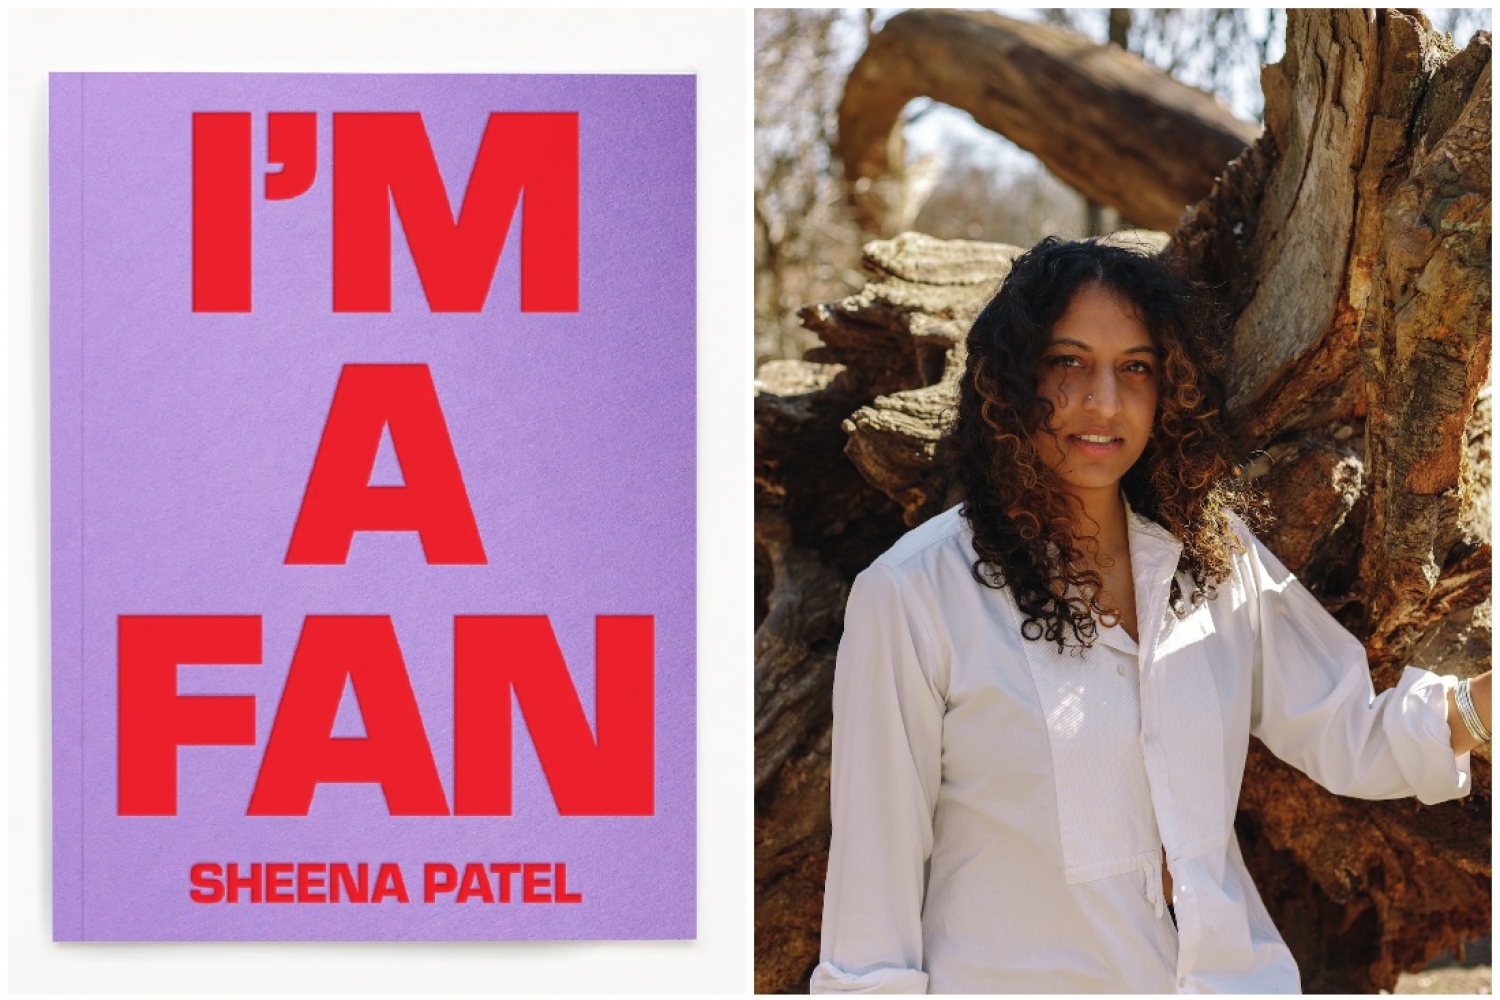 I’m A Fan: Sheena Patel